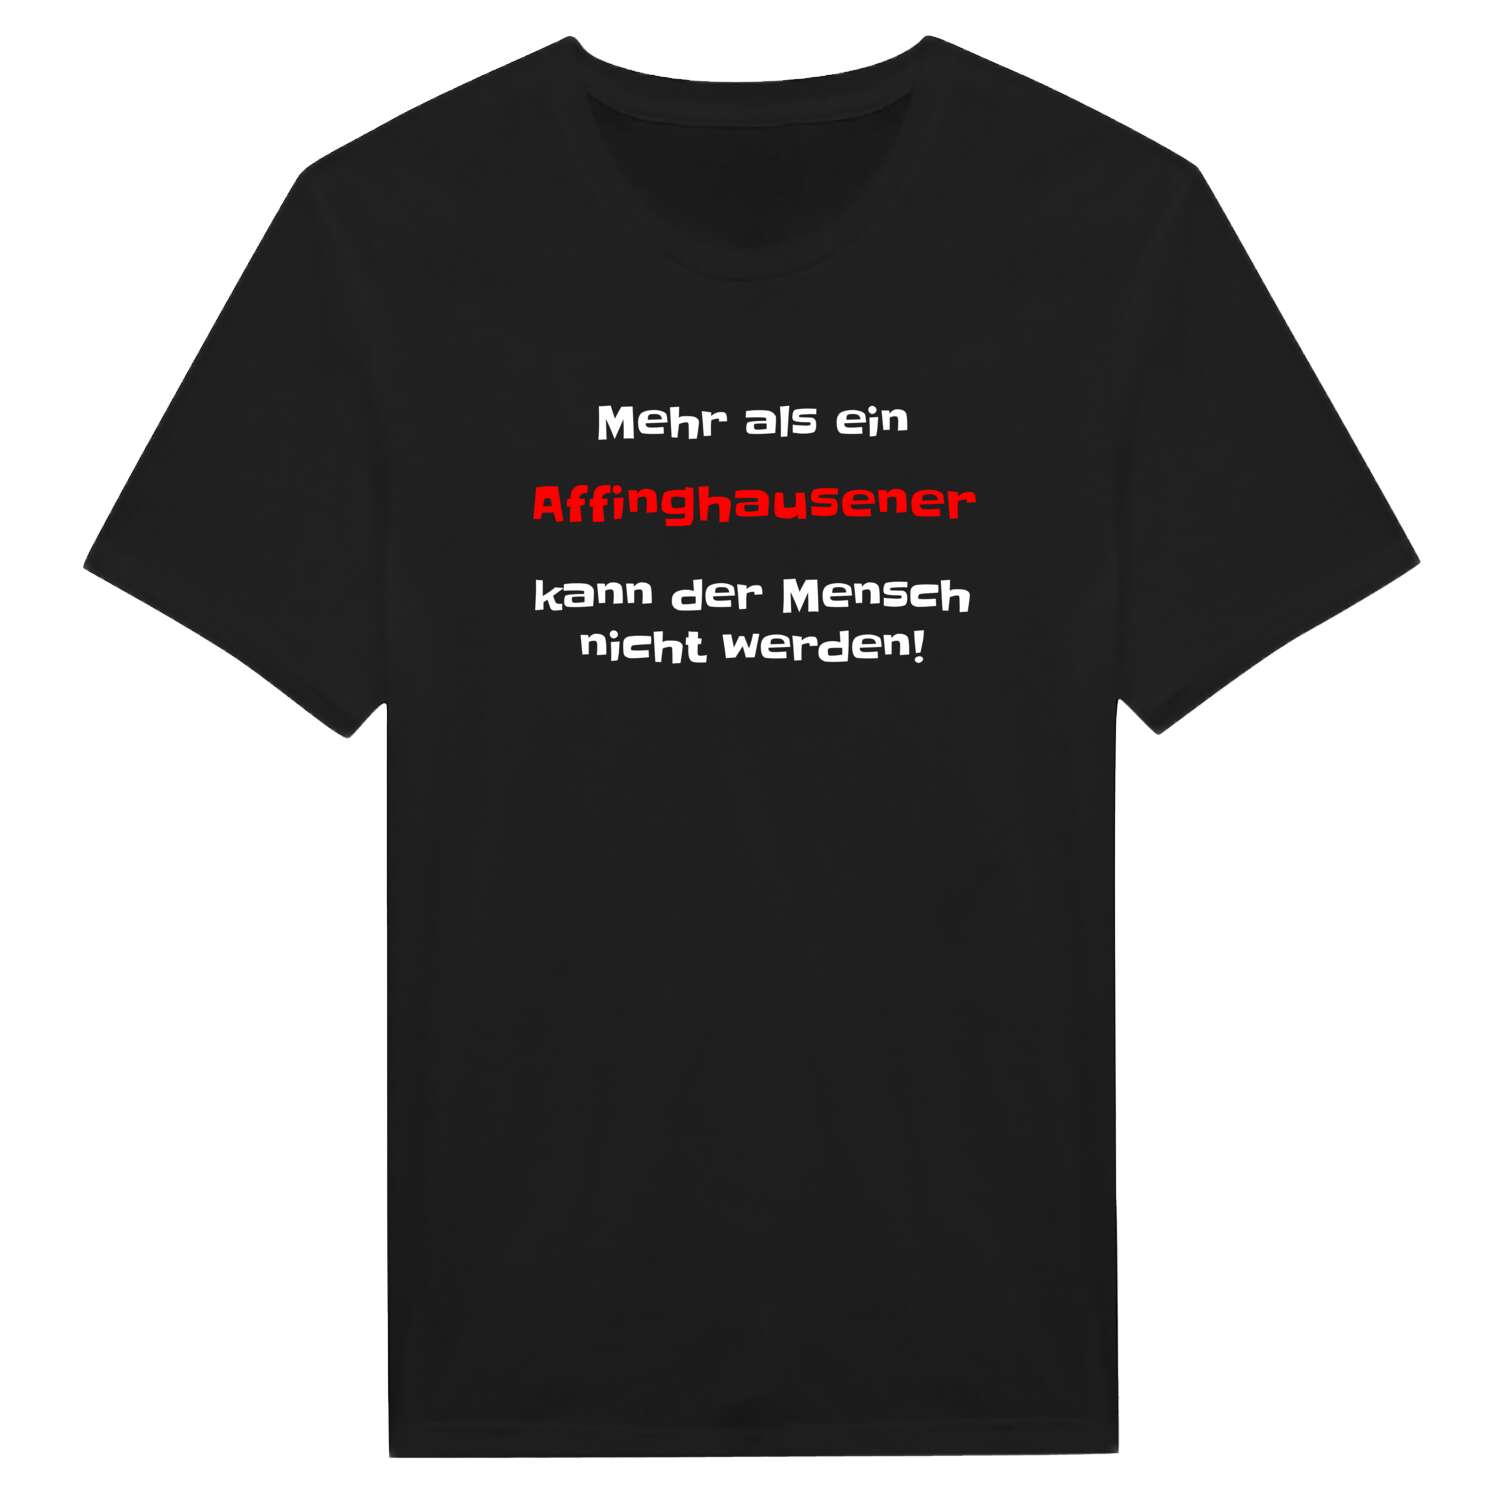 Affinghausen T-Shirt »Mehr als ein«